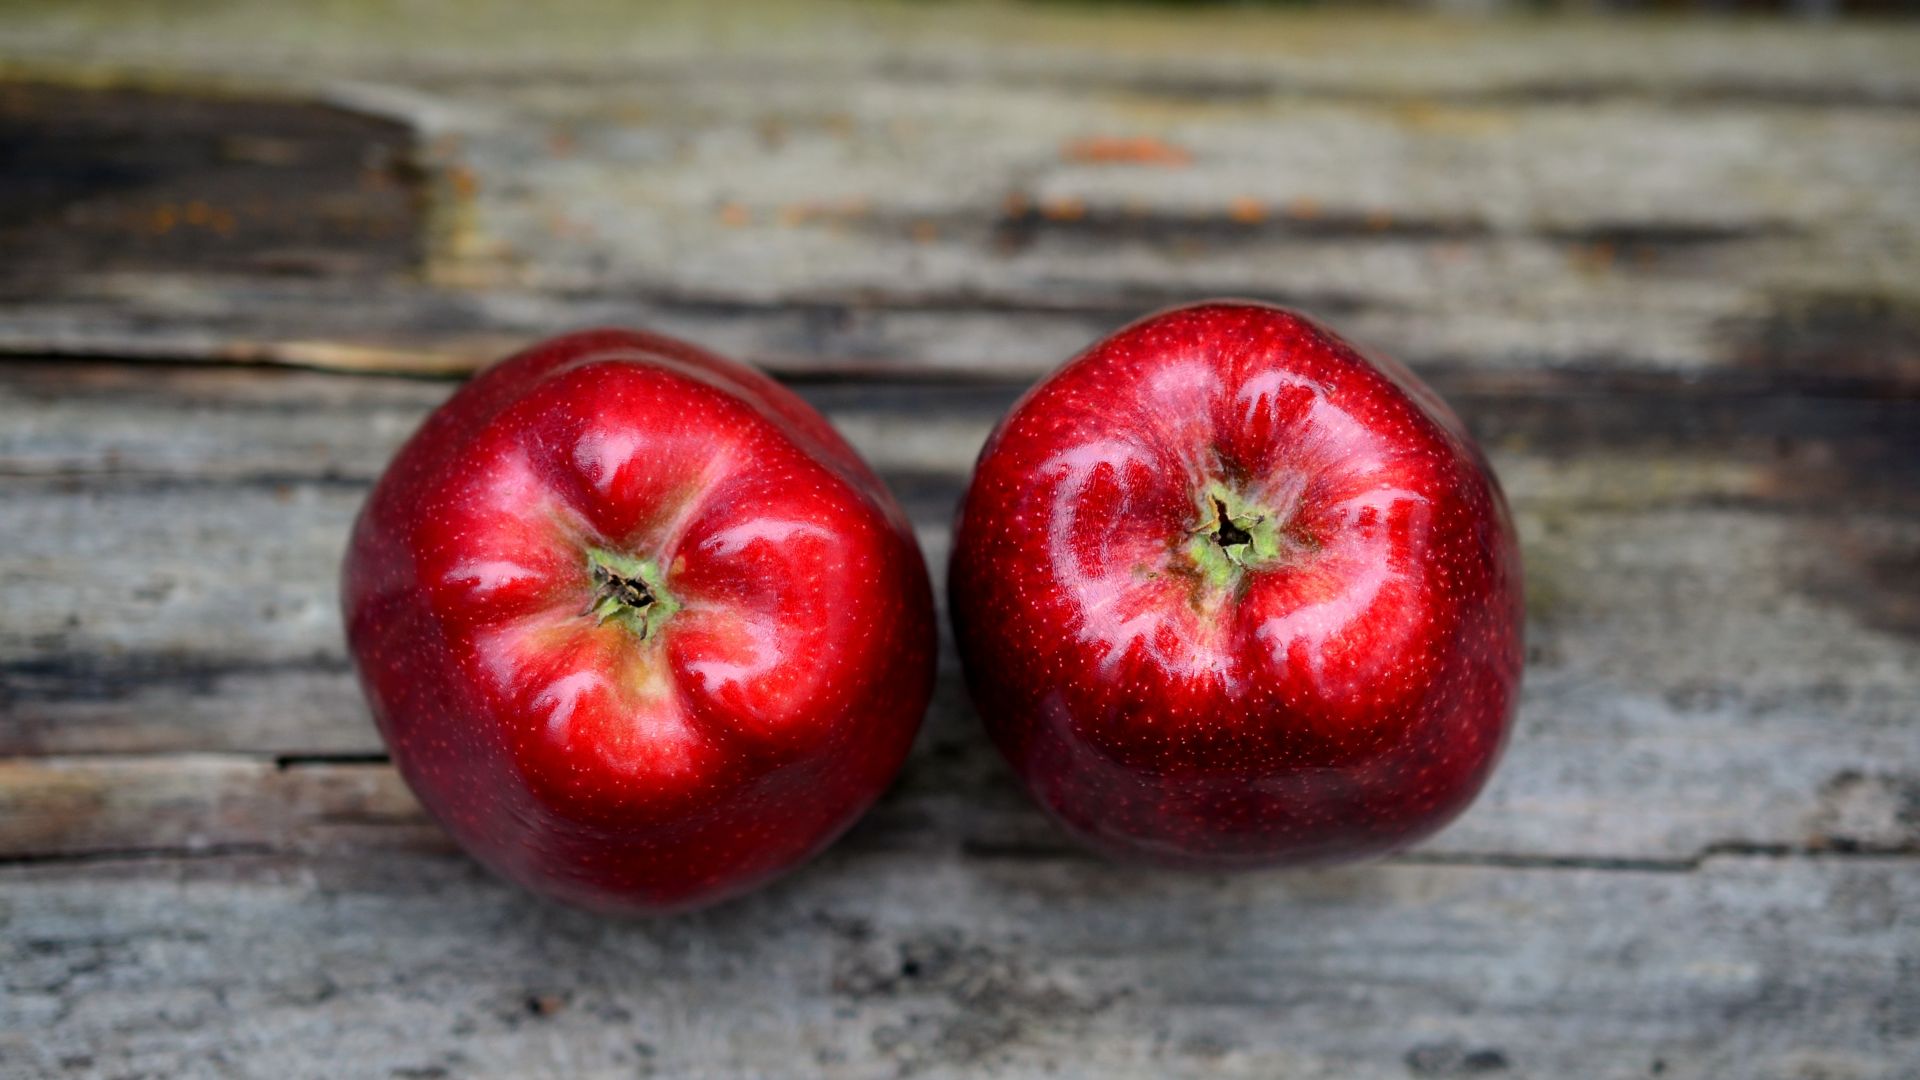 التفاح الأحمر يساعد على تخفيض ضغط الدم